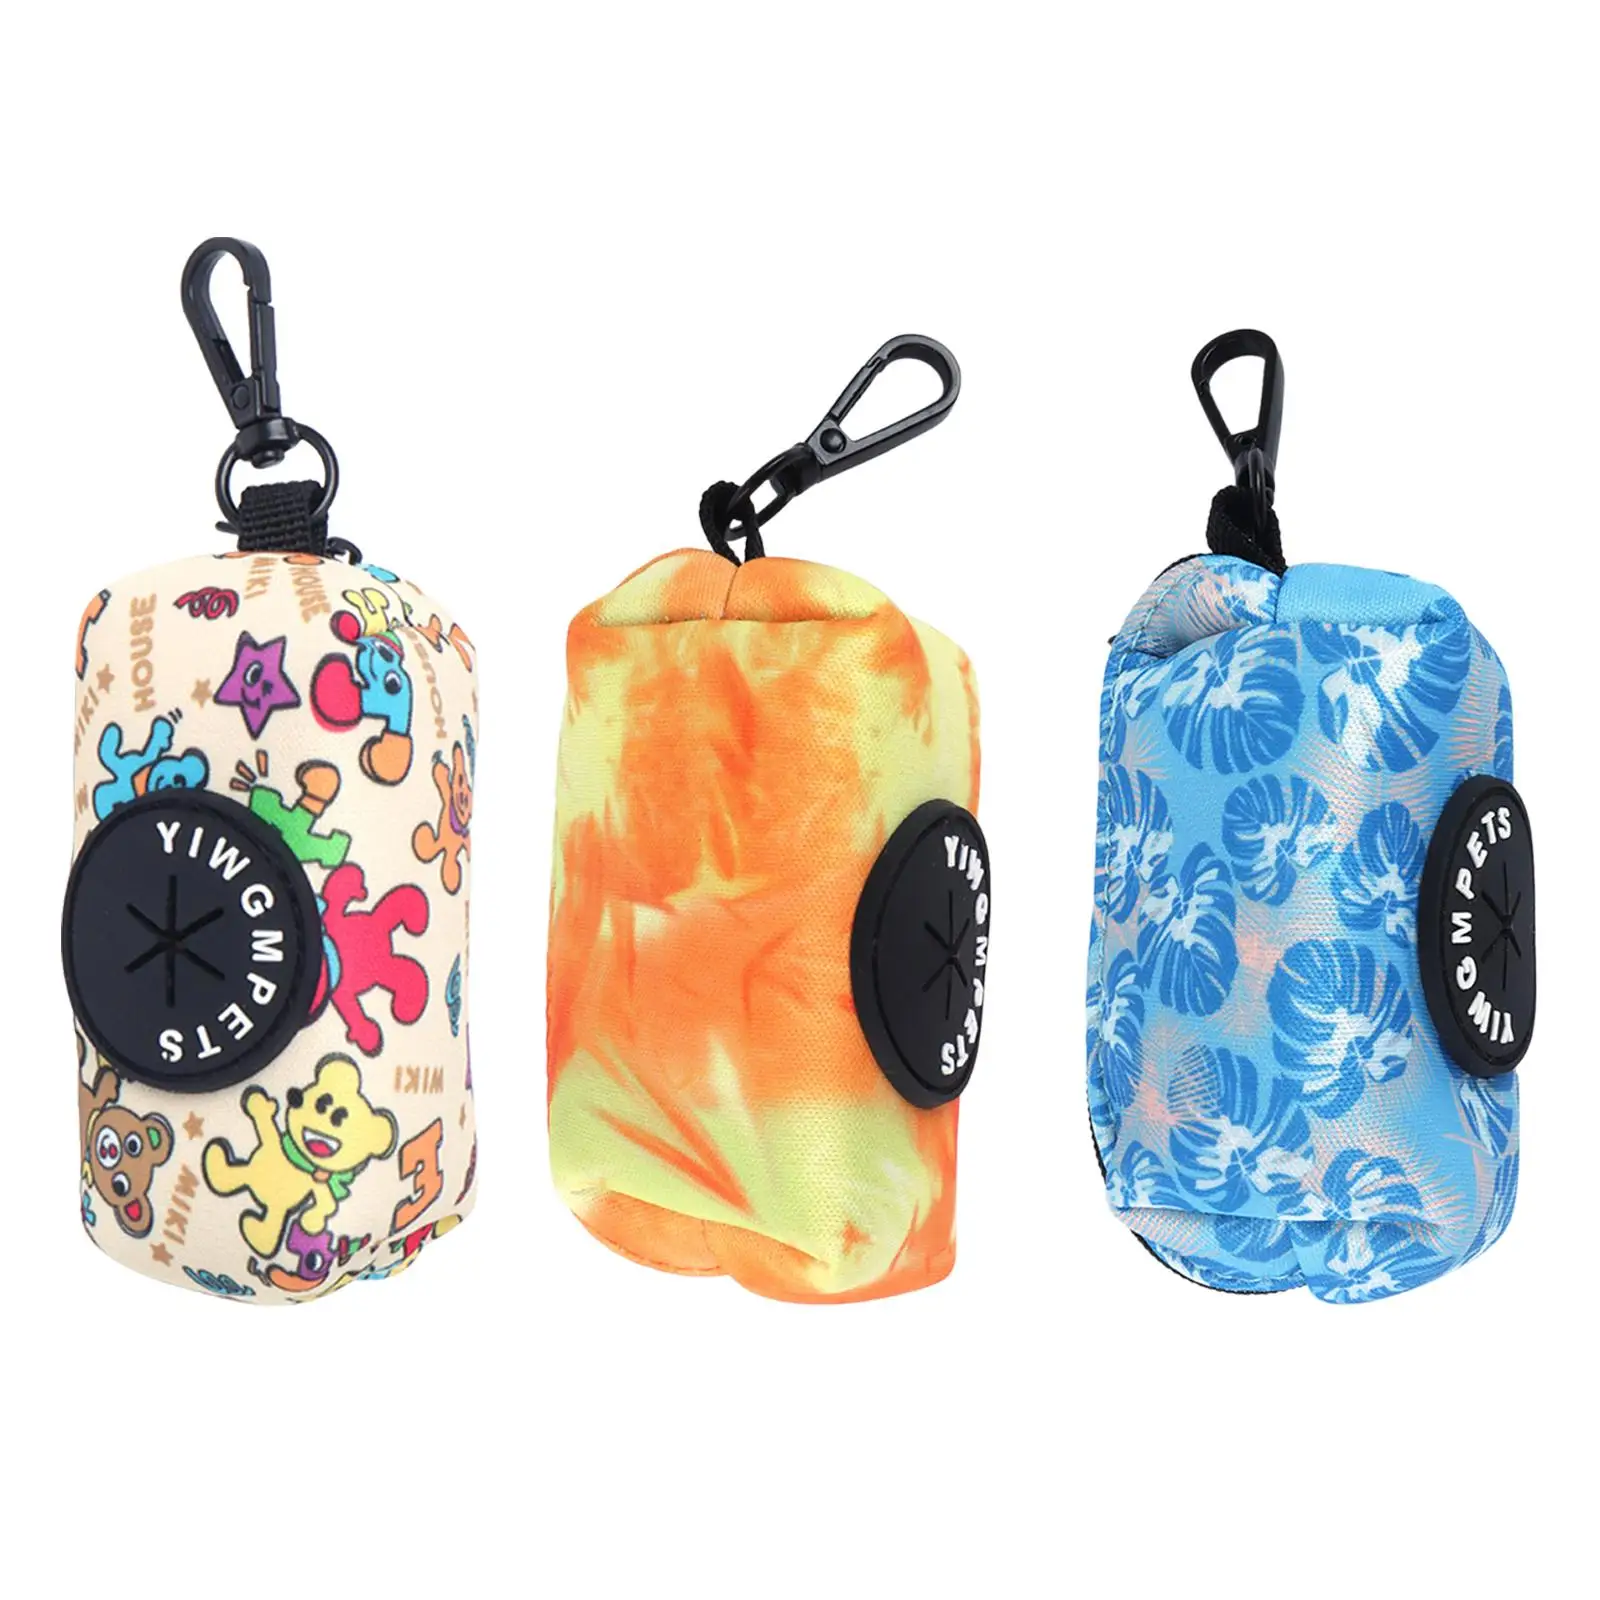 Portable Dog Poop Bag Holder Zipper with Buckle Clips Pet Waste Bag Dispenser for Outdoor